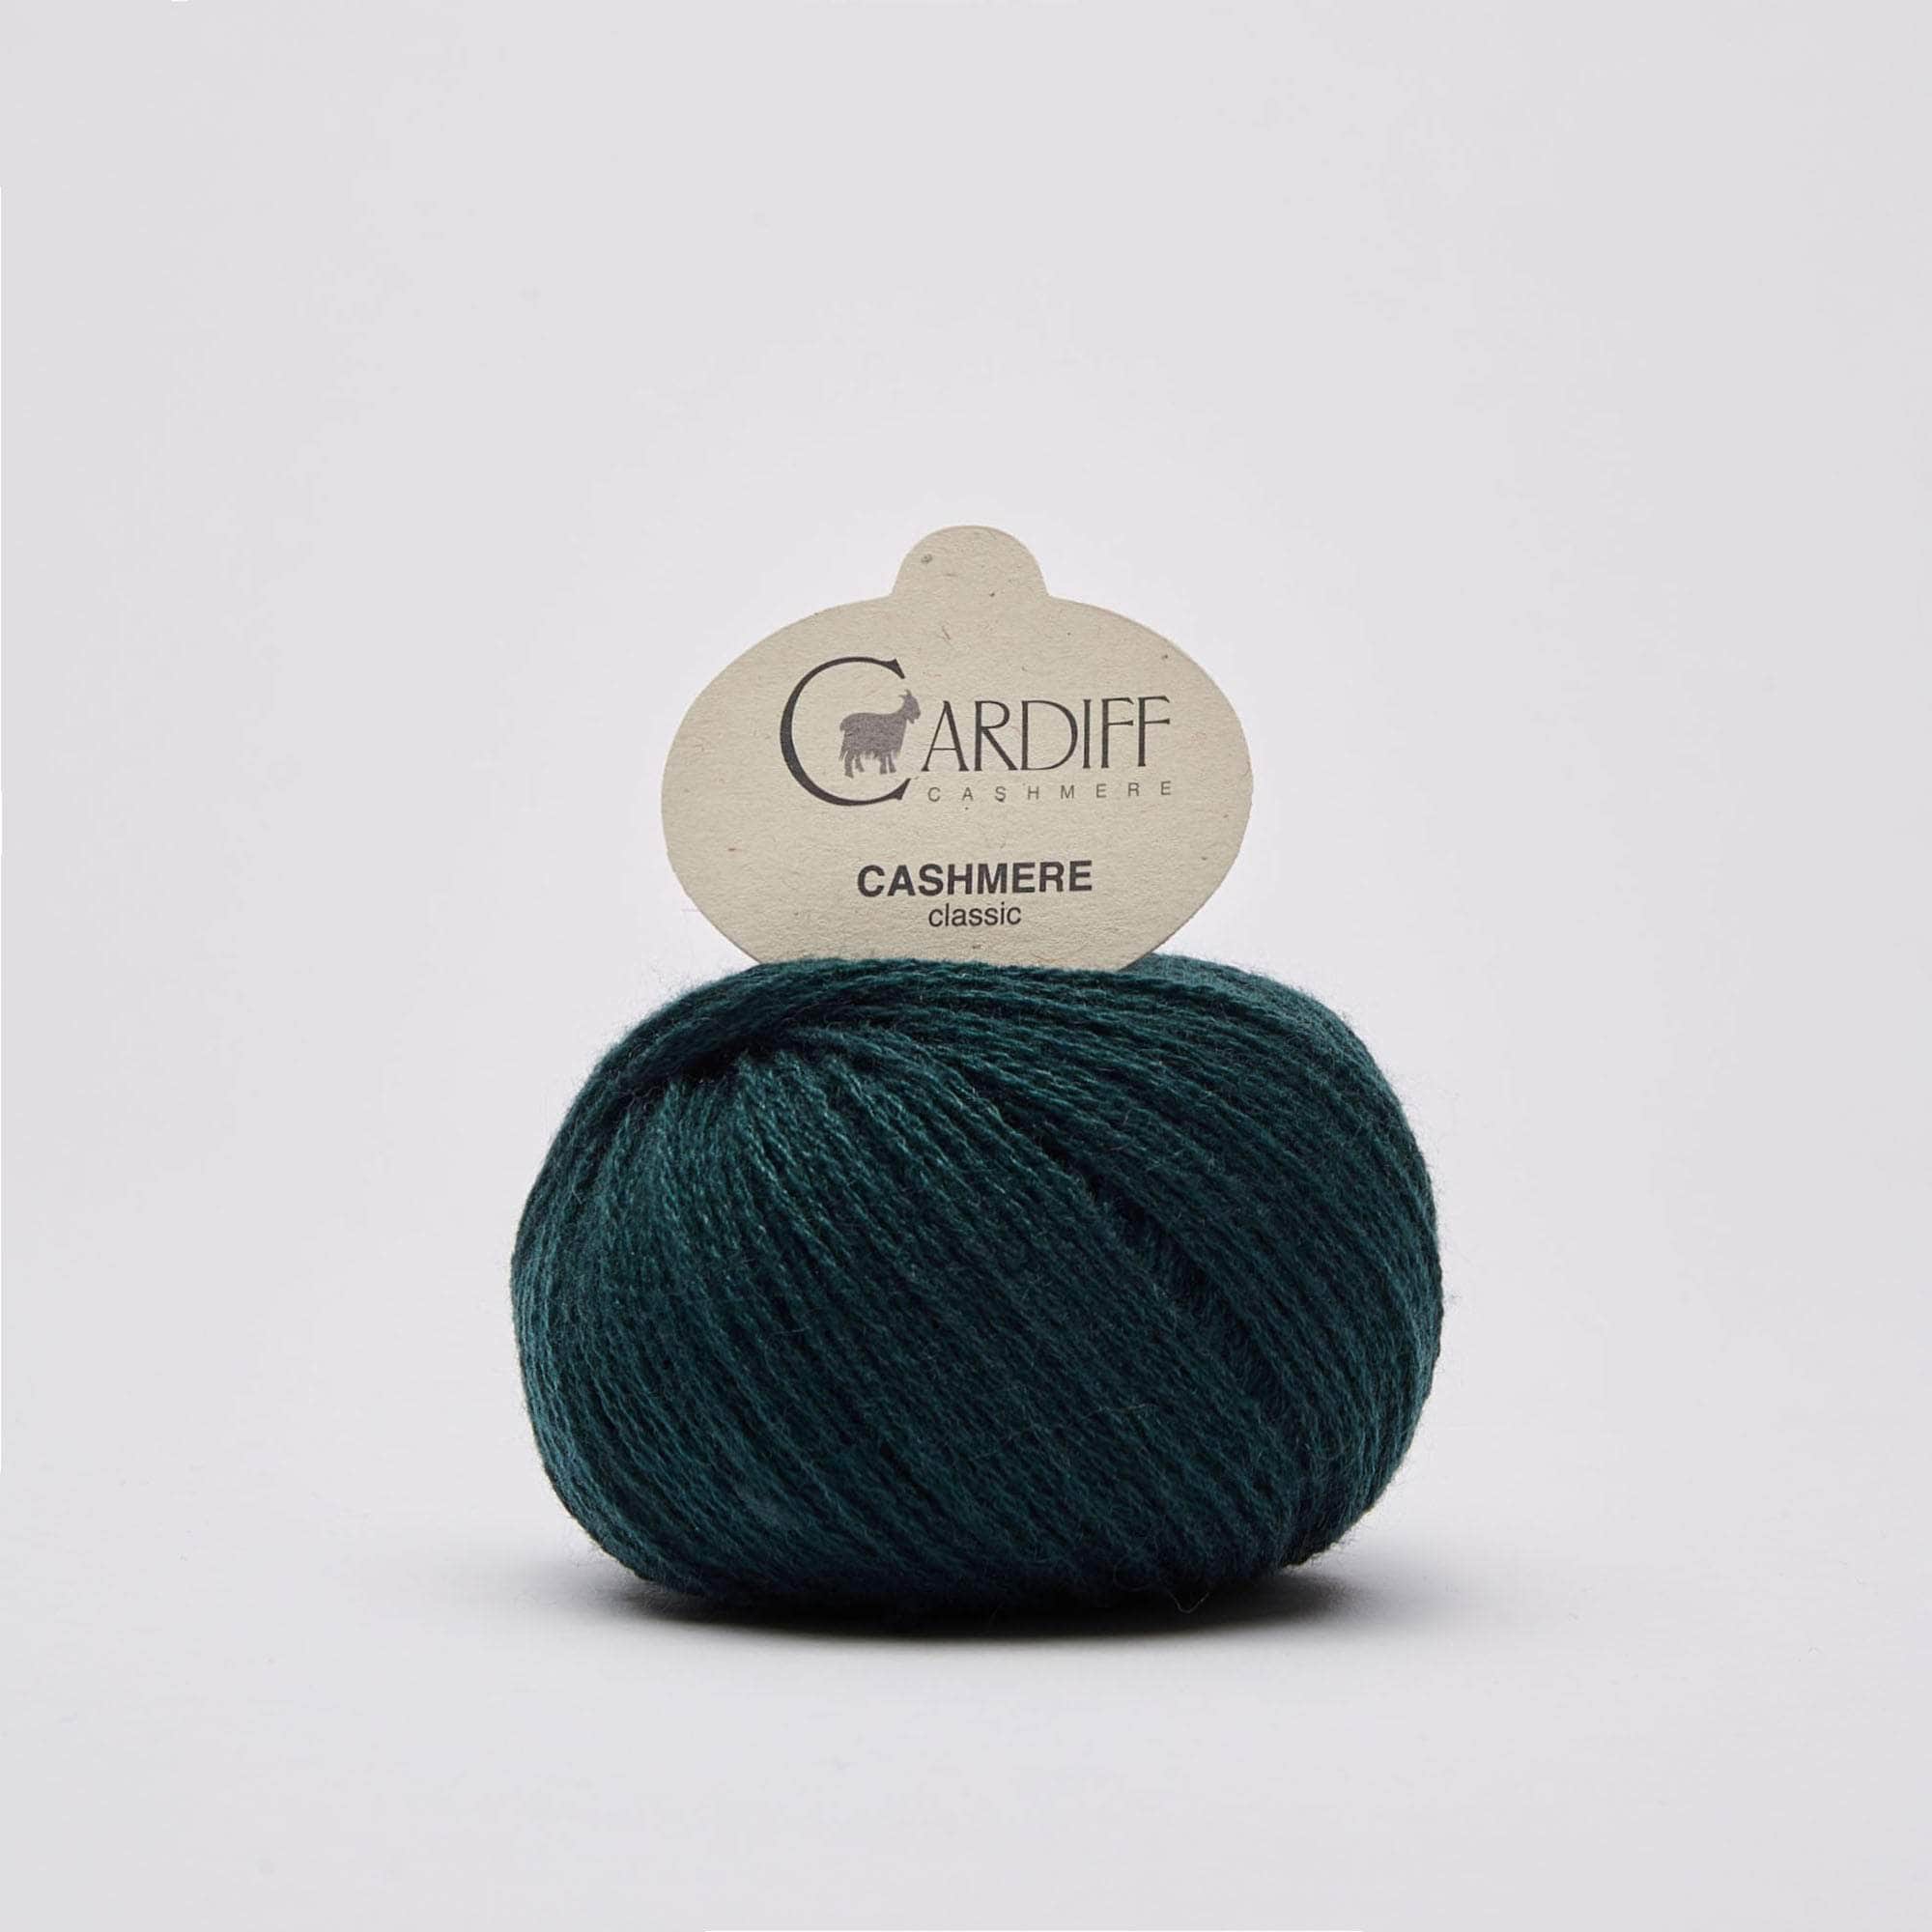 Cashmere Classic von CARDIFF CASHMERE jetzt online kaufen bei OONIQUE